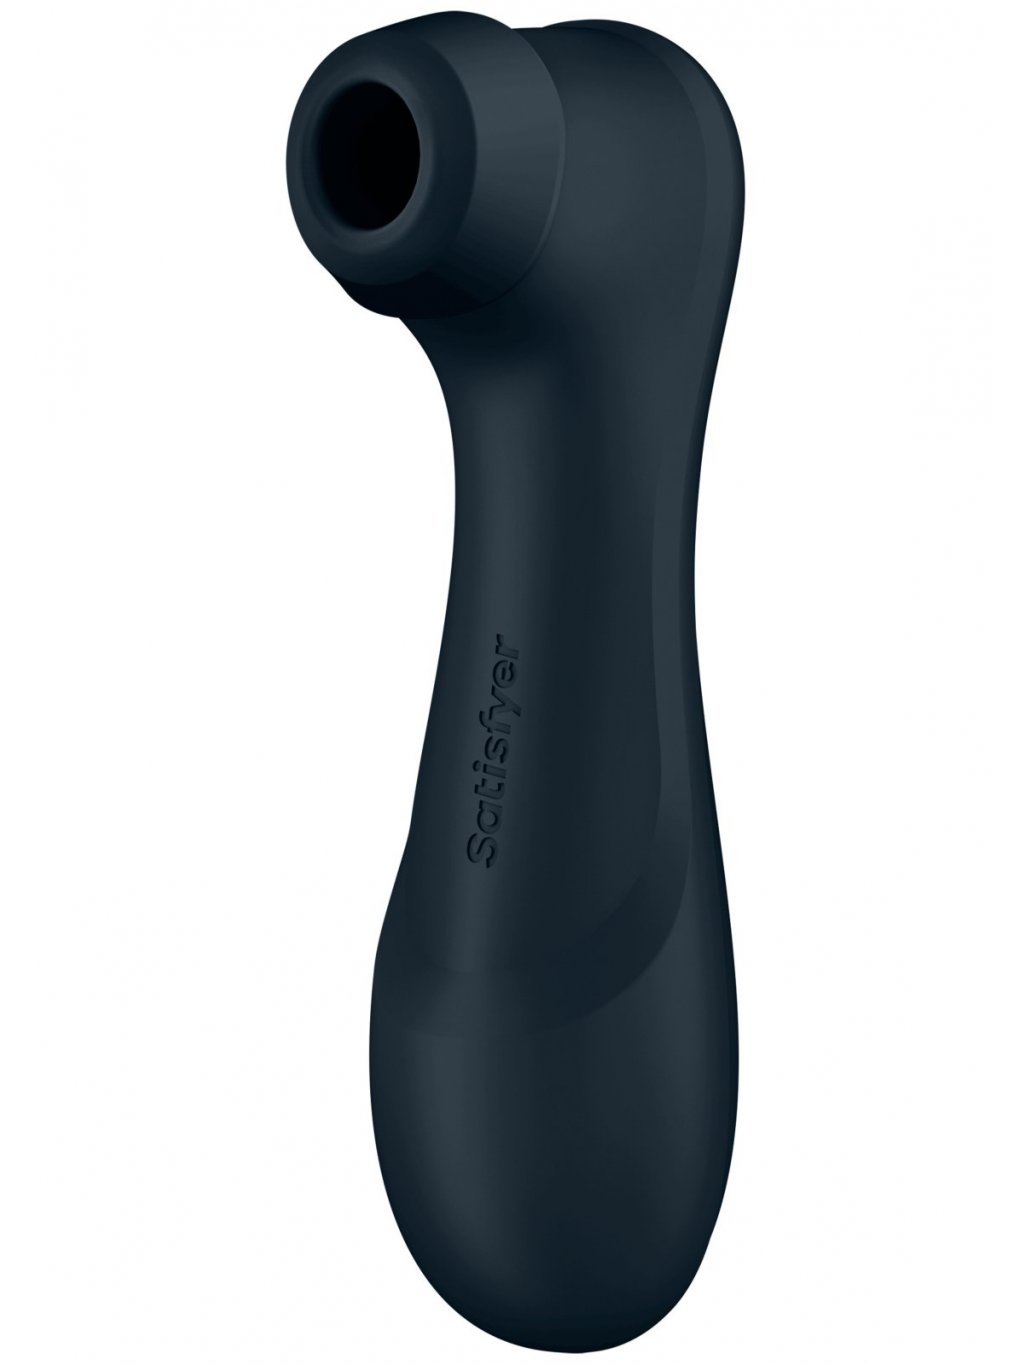 Pulzační a vibrační stimulátor klitorisu Satisfyer Pro 2 Generation 3 Black